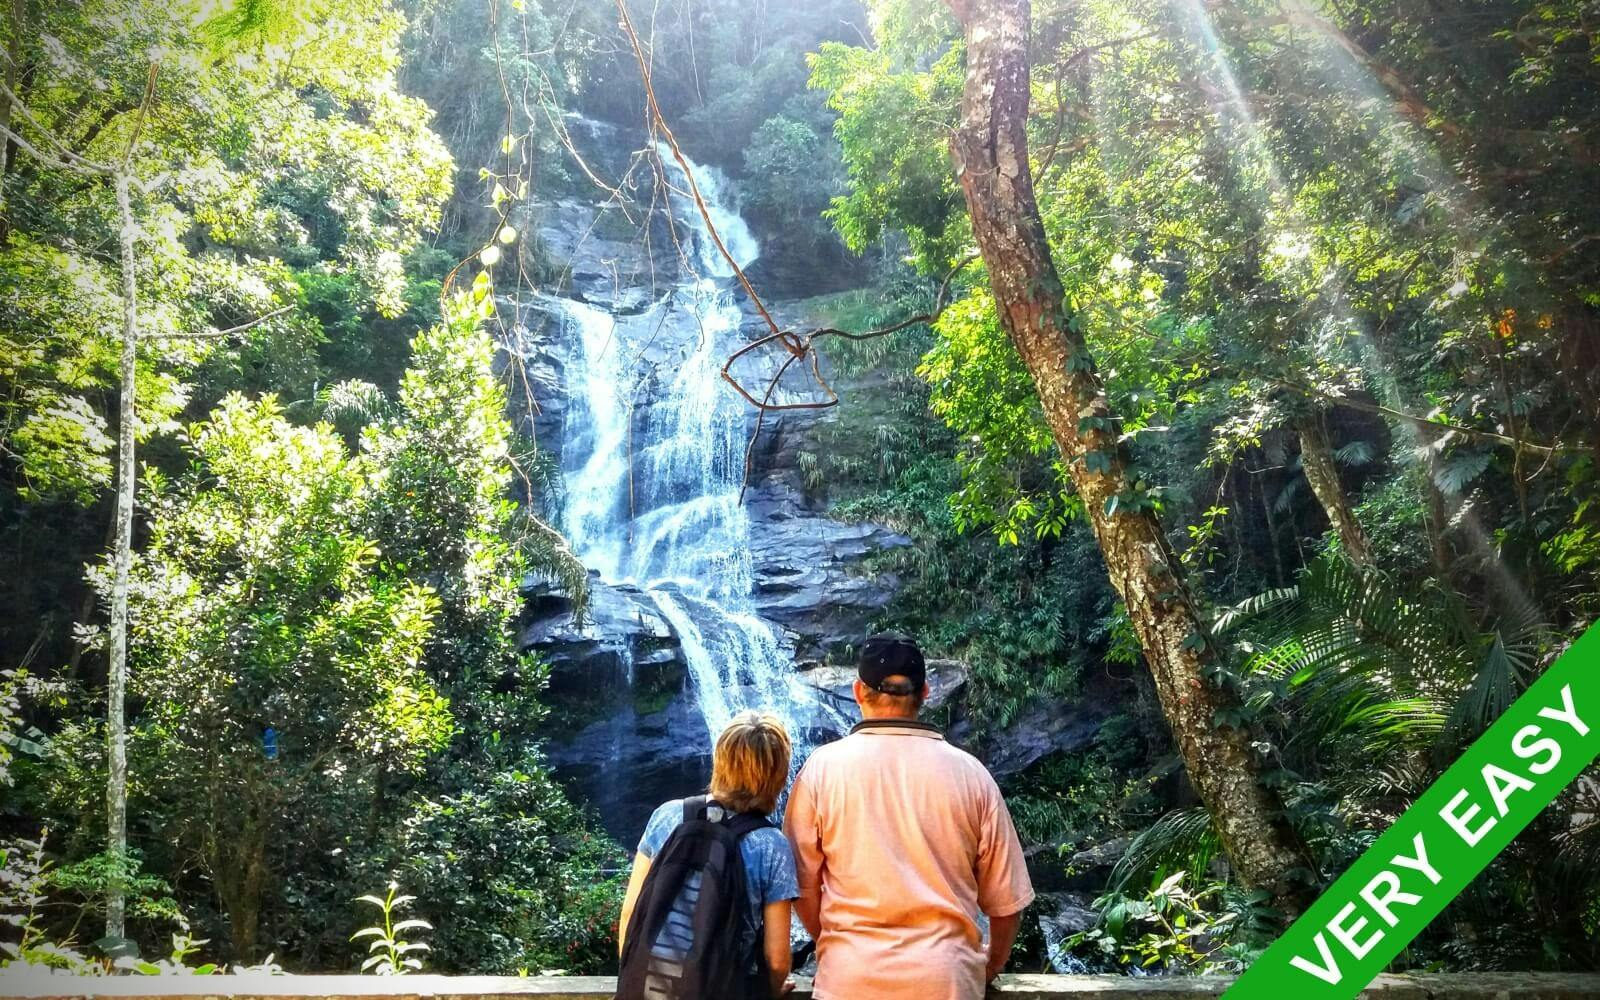 Natur-Öko-Tour durch den Tijuca-Wald und den Penhasco Dois Irmãos-Park